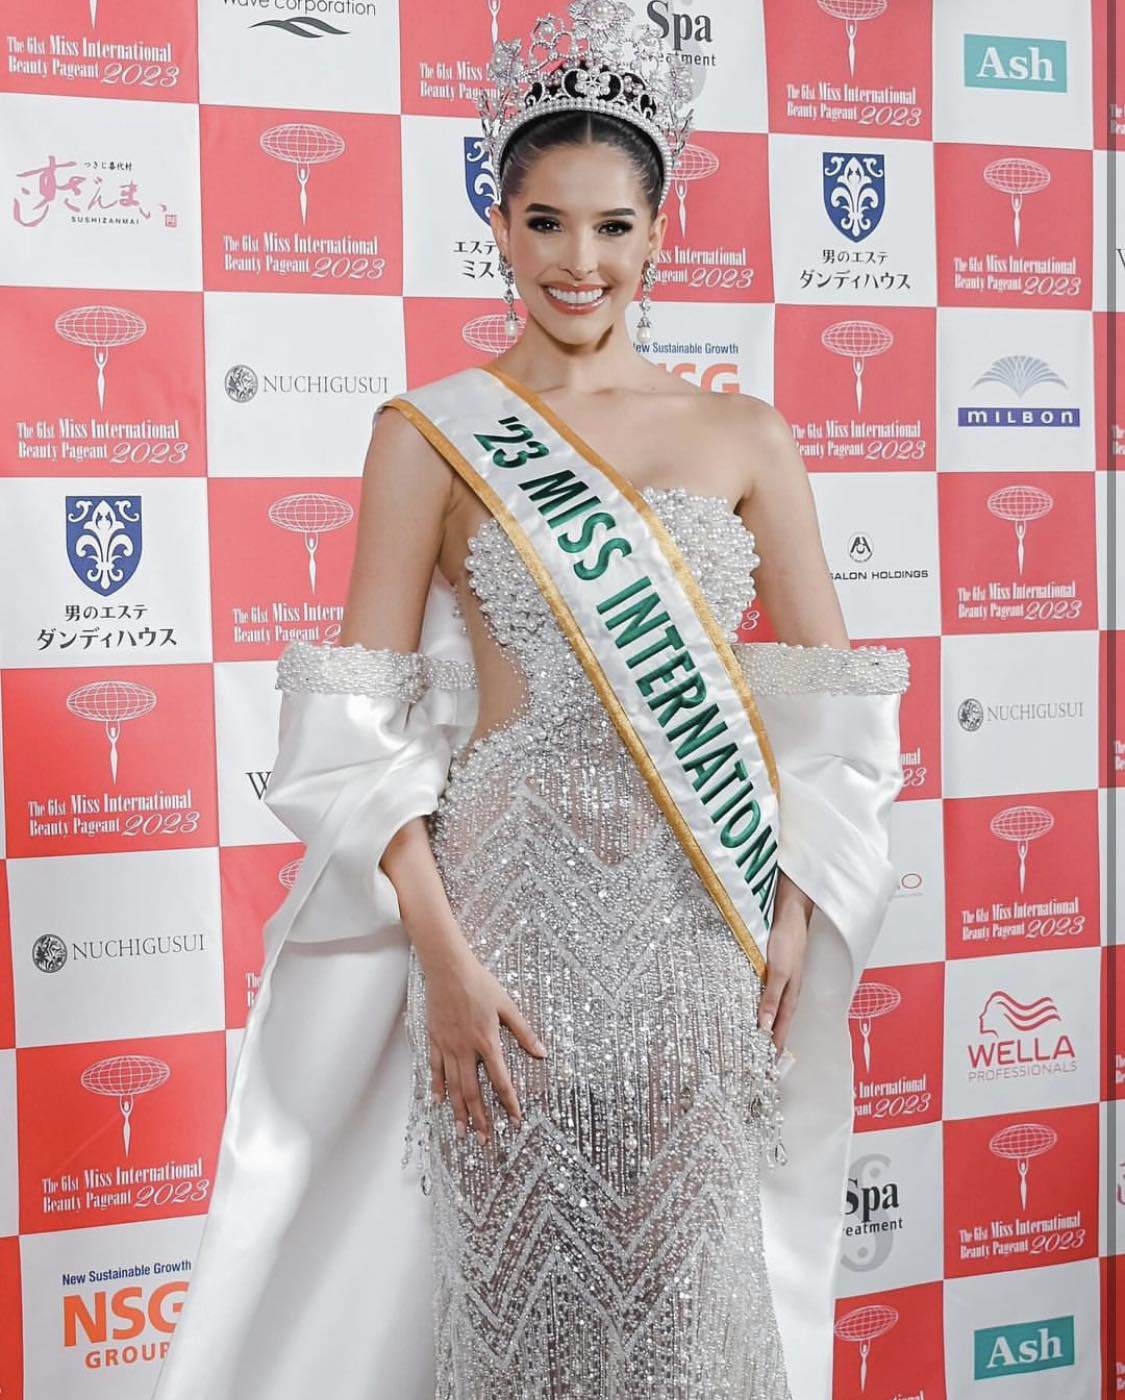 Vẻ đẹp như trong tranh của người đẹp Venezuela thứ 9 lên ngôi Hoa hậu Quốc tế 2023 - 1